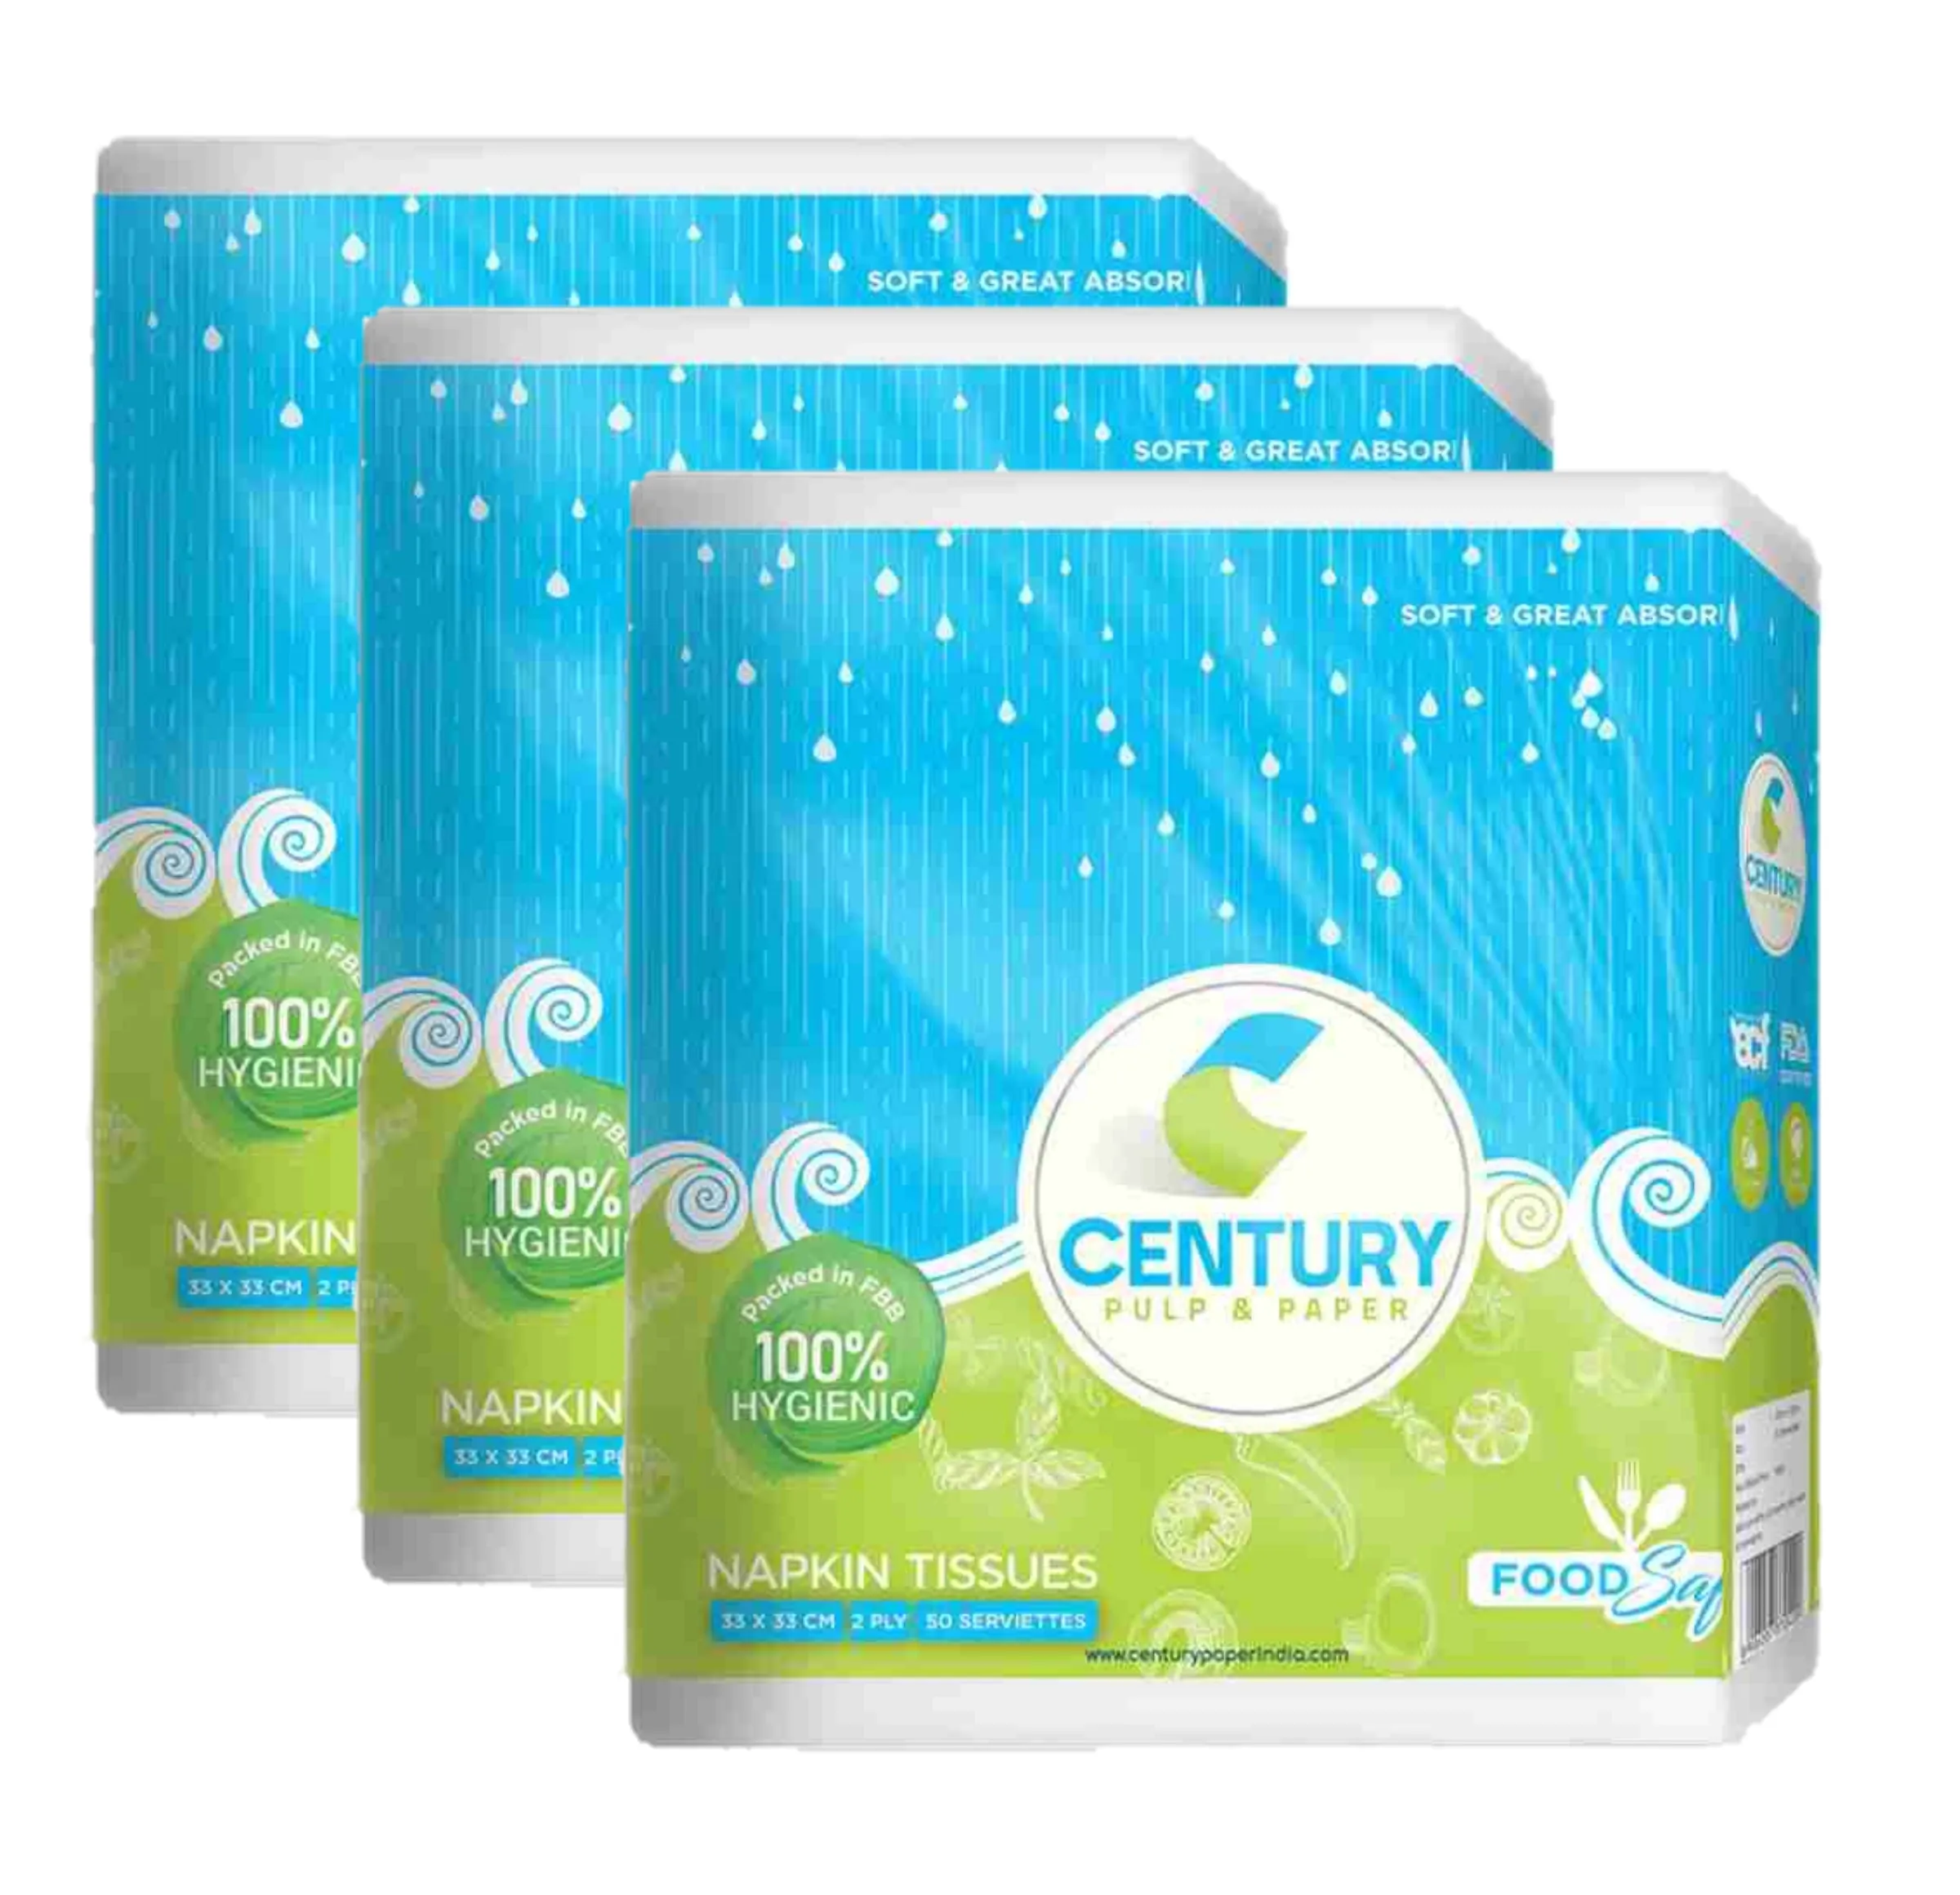 Century Food Safe Napkin Tissue (33 X 33 cm , 50 Pulls / Serviettes) - Pack Of 3